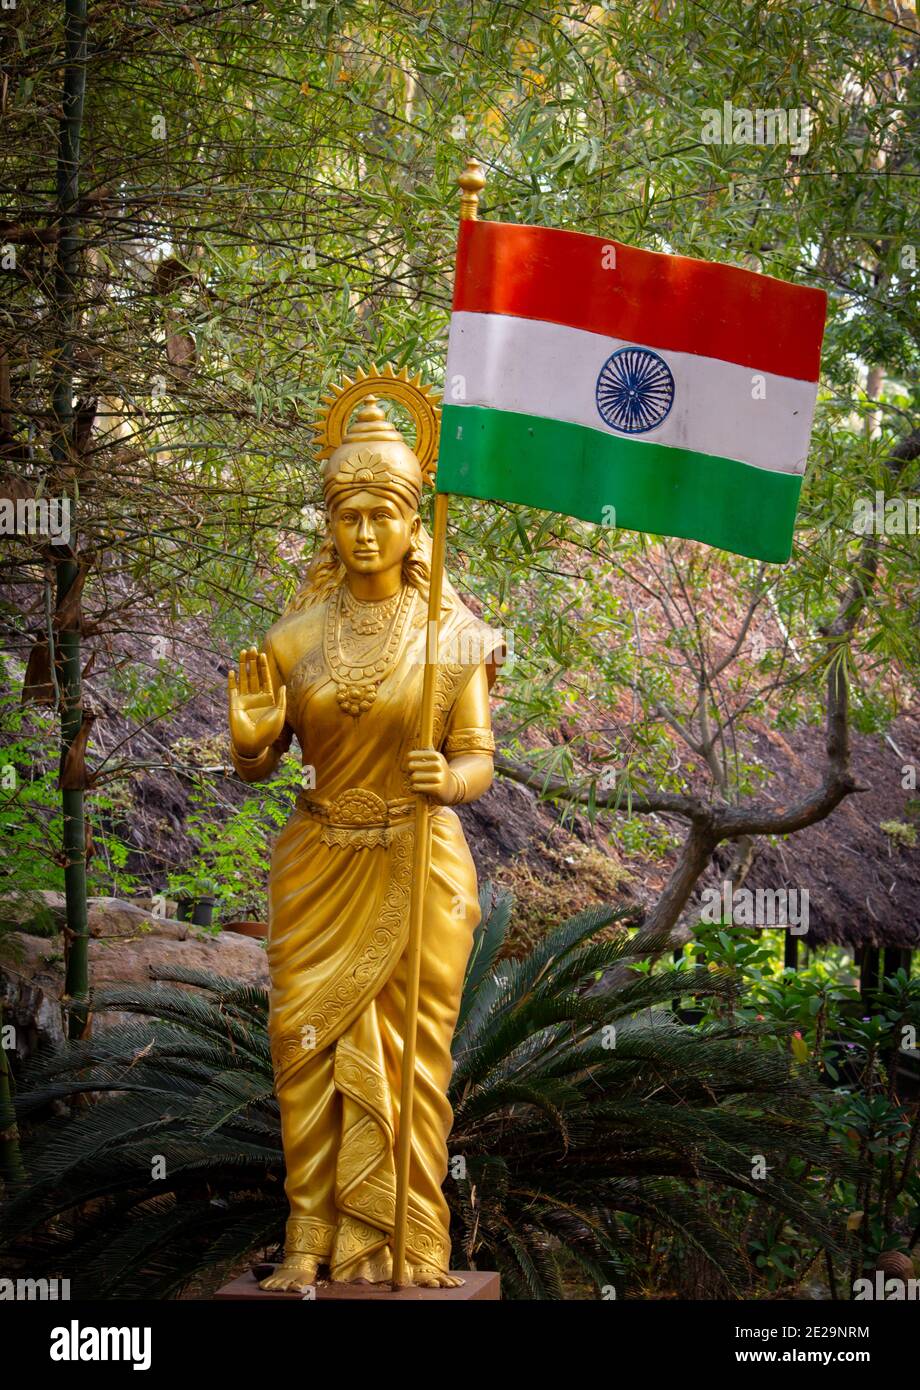 Madre India con bandiera indiana. Bandiera nazionale indiana. Da utilizzare per la celebrazione del giorno della repubblica. Focus sulla statua Foto Stock